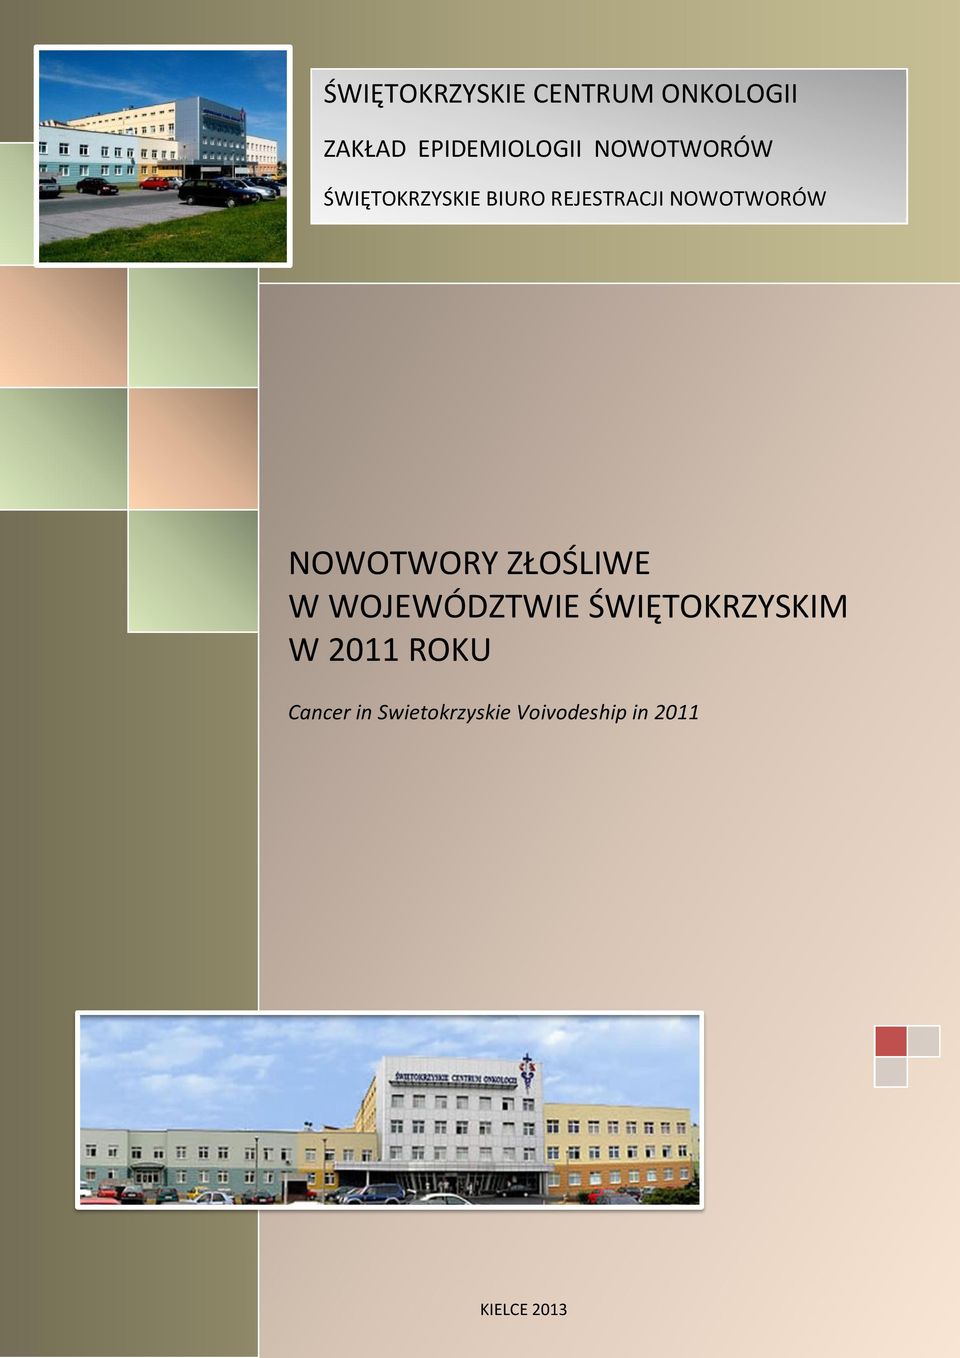 WOJEWÓDZTWIE ŚWIĘTOKRZYSKIM W 2011 ROKU Cancer in Swietokrzyskie